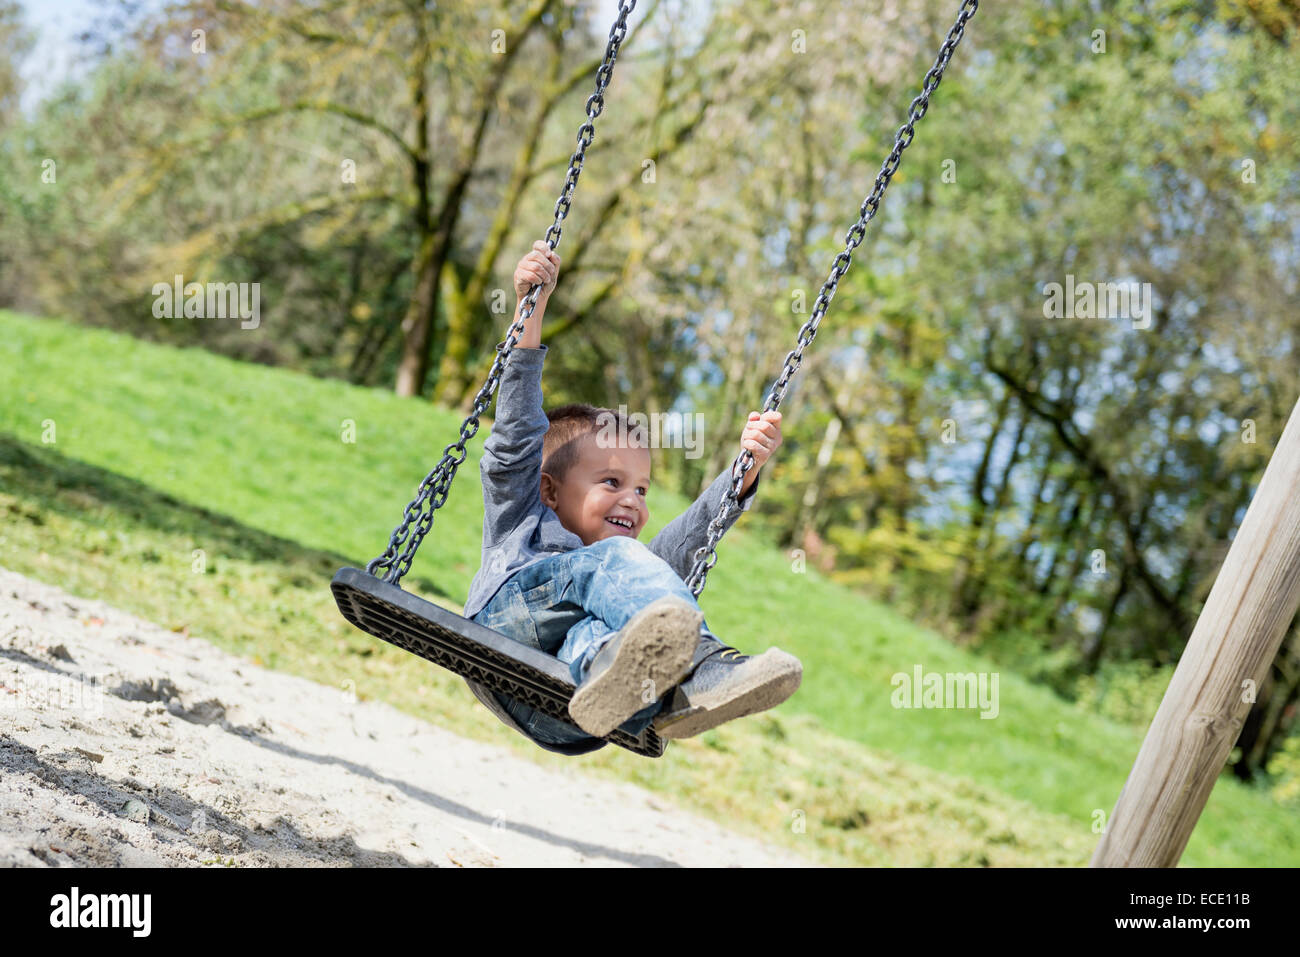 Happy Young boy swinging sur aire de rotation Banque D'Images